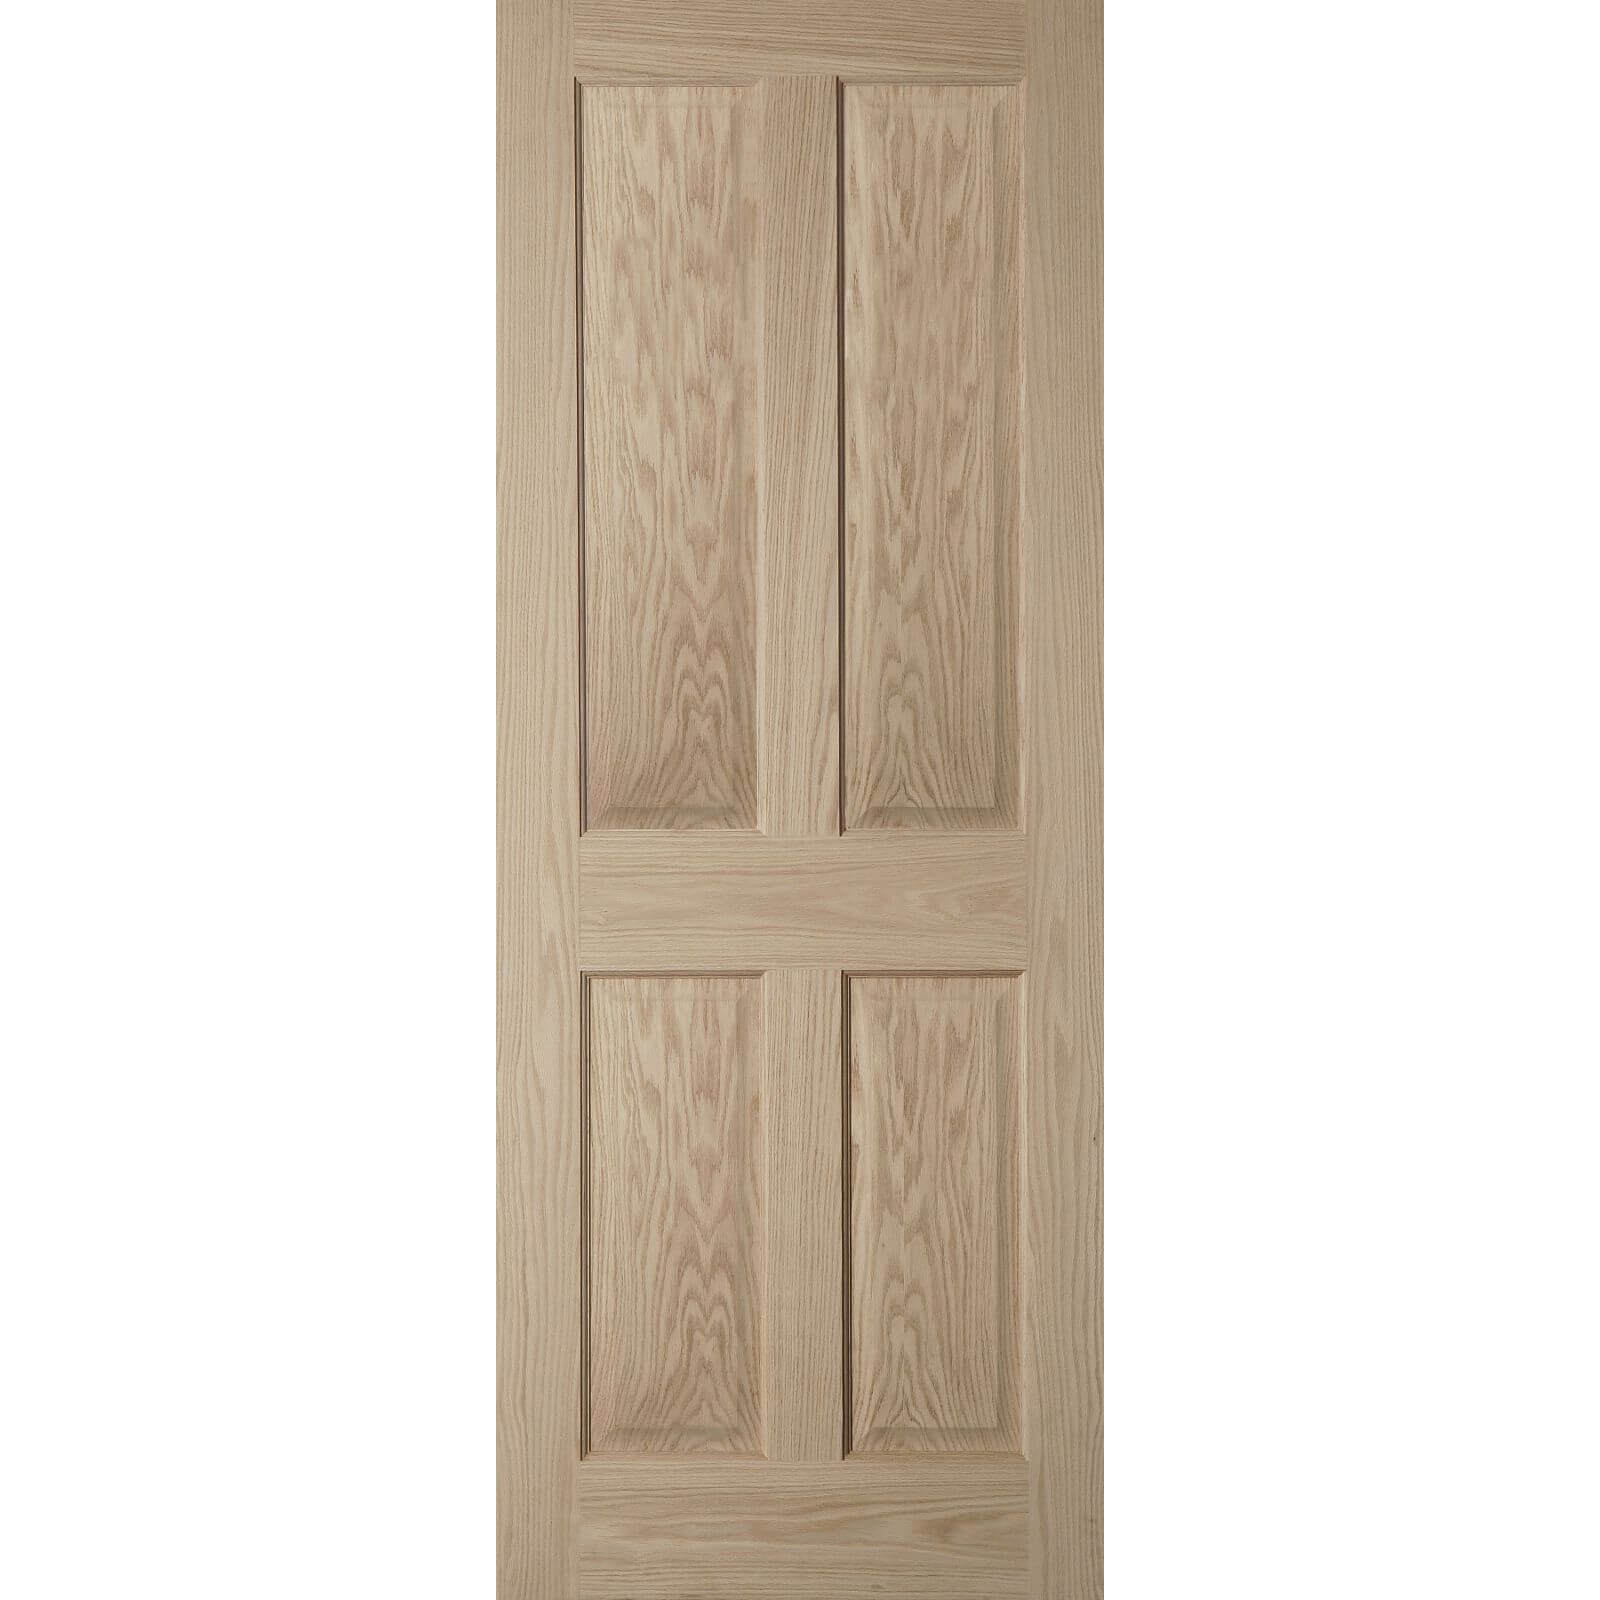 4 Panel Oak Veneer Internal Door - 533mm Wide